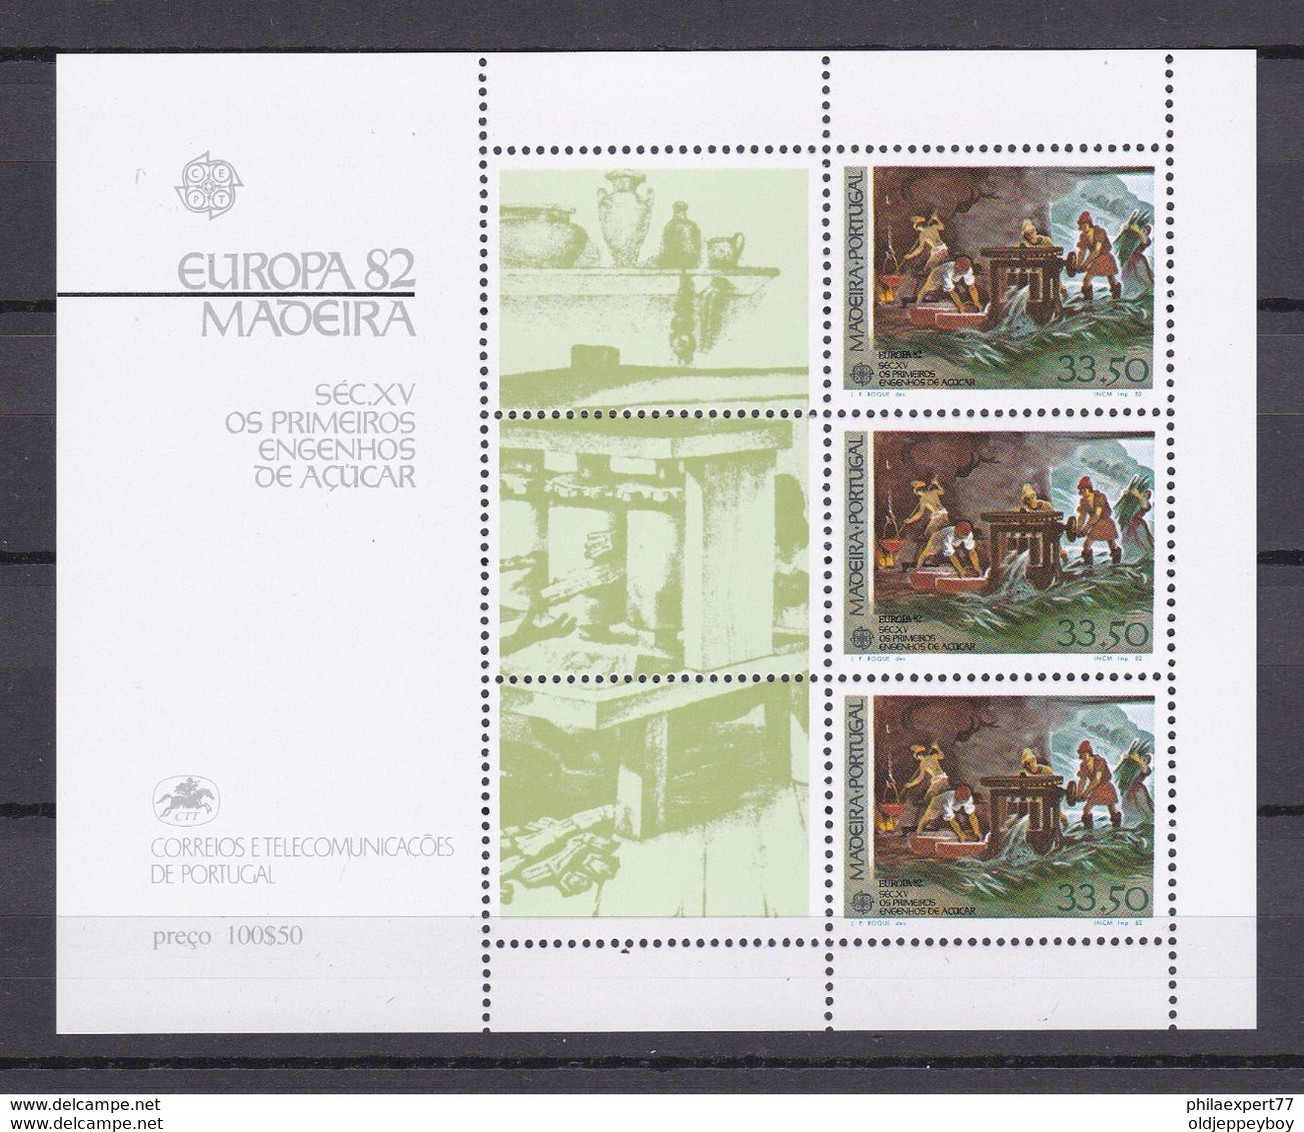 PORTUGAL MADEIRA 1982, SG MS200  Michel Nr. Block 3  Europa, Sugar Mill, MNH Post Office Fresh €7,00 MNH** - Kisten Für Briefmarken